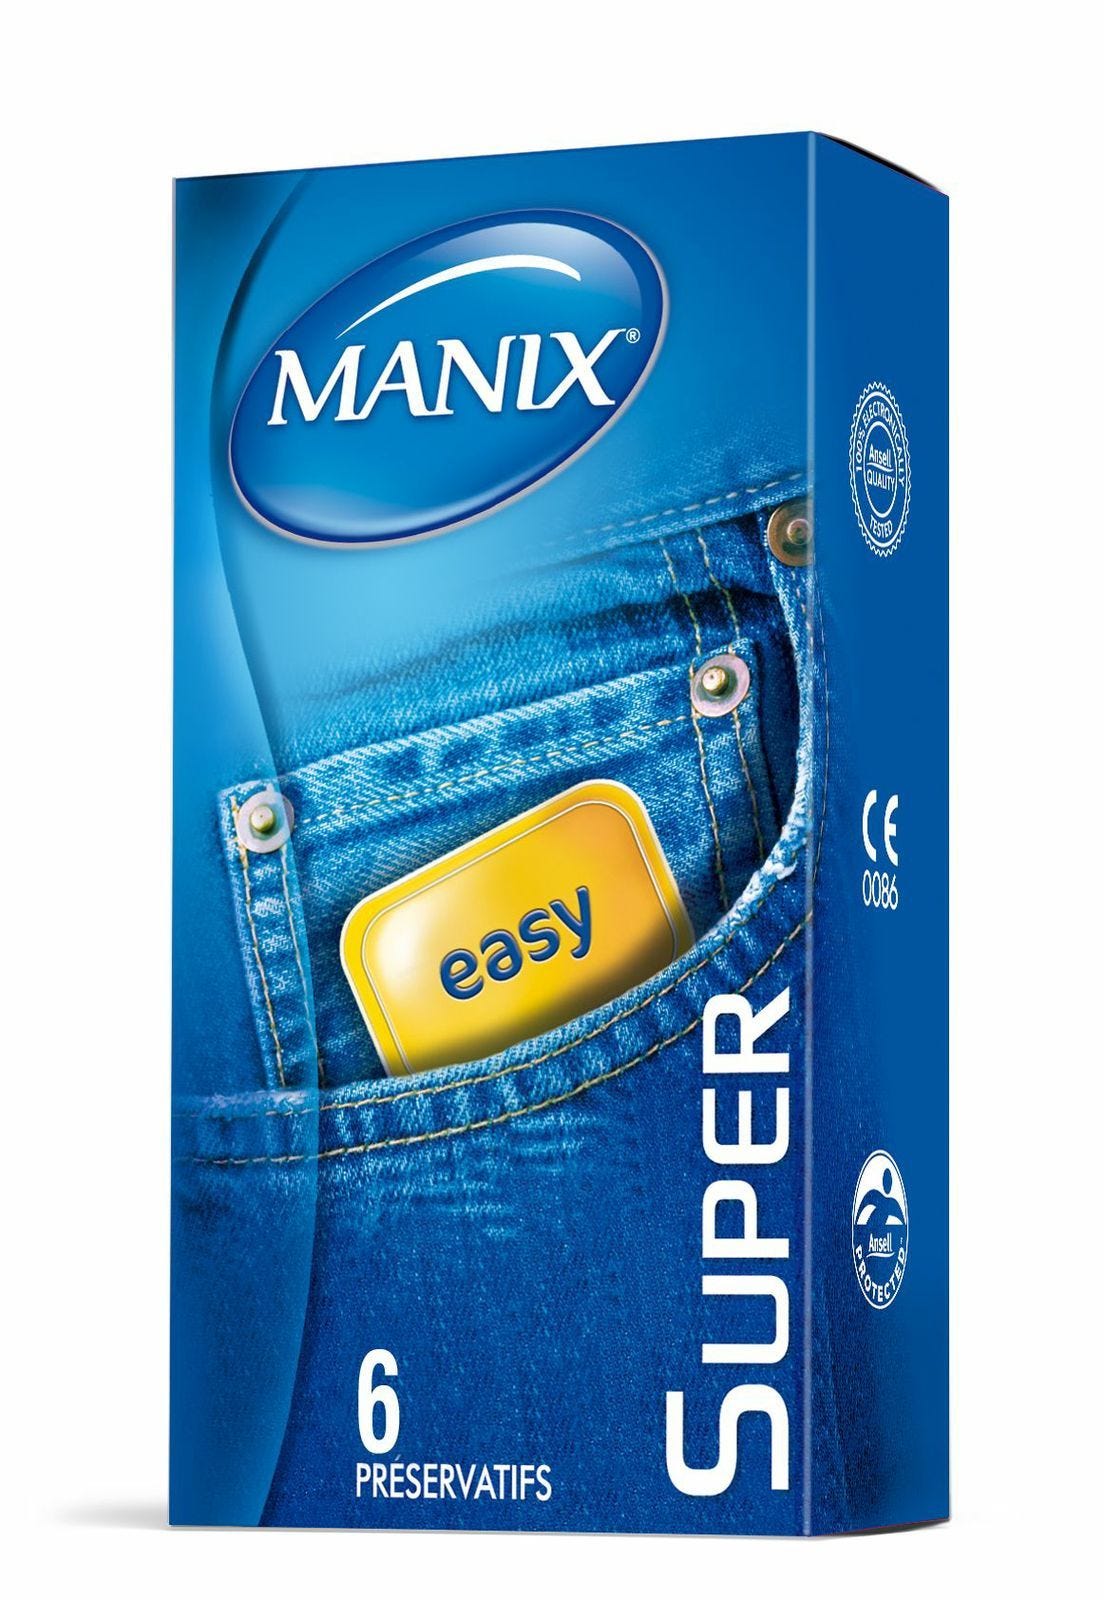 Marc Dorcel - Préservatifs Manix Super x 6 [Bien être et santé]